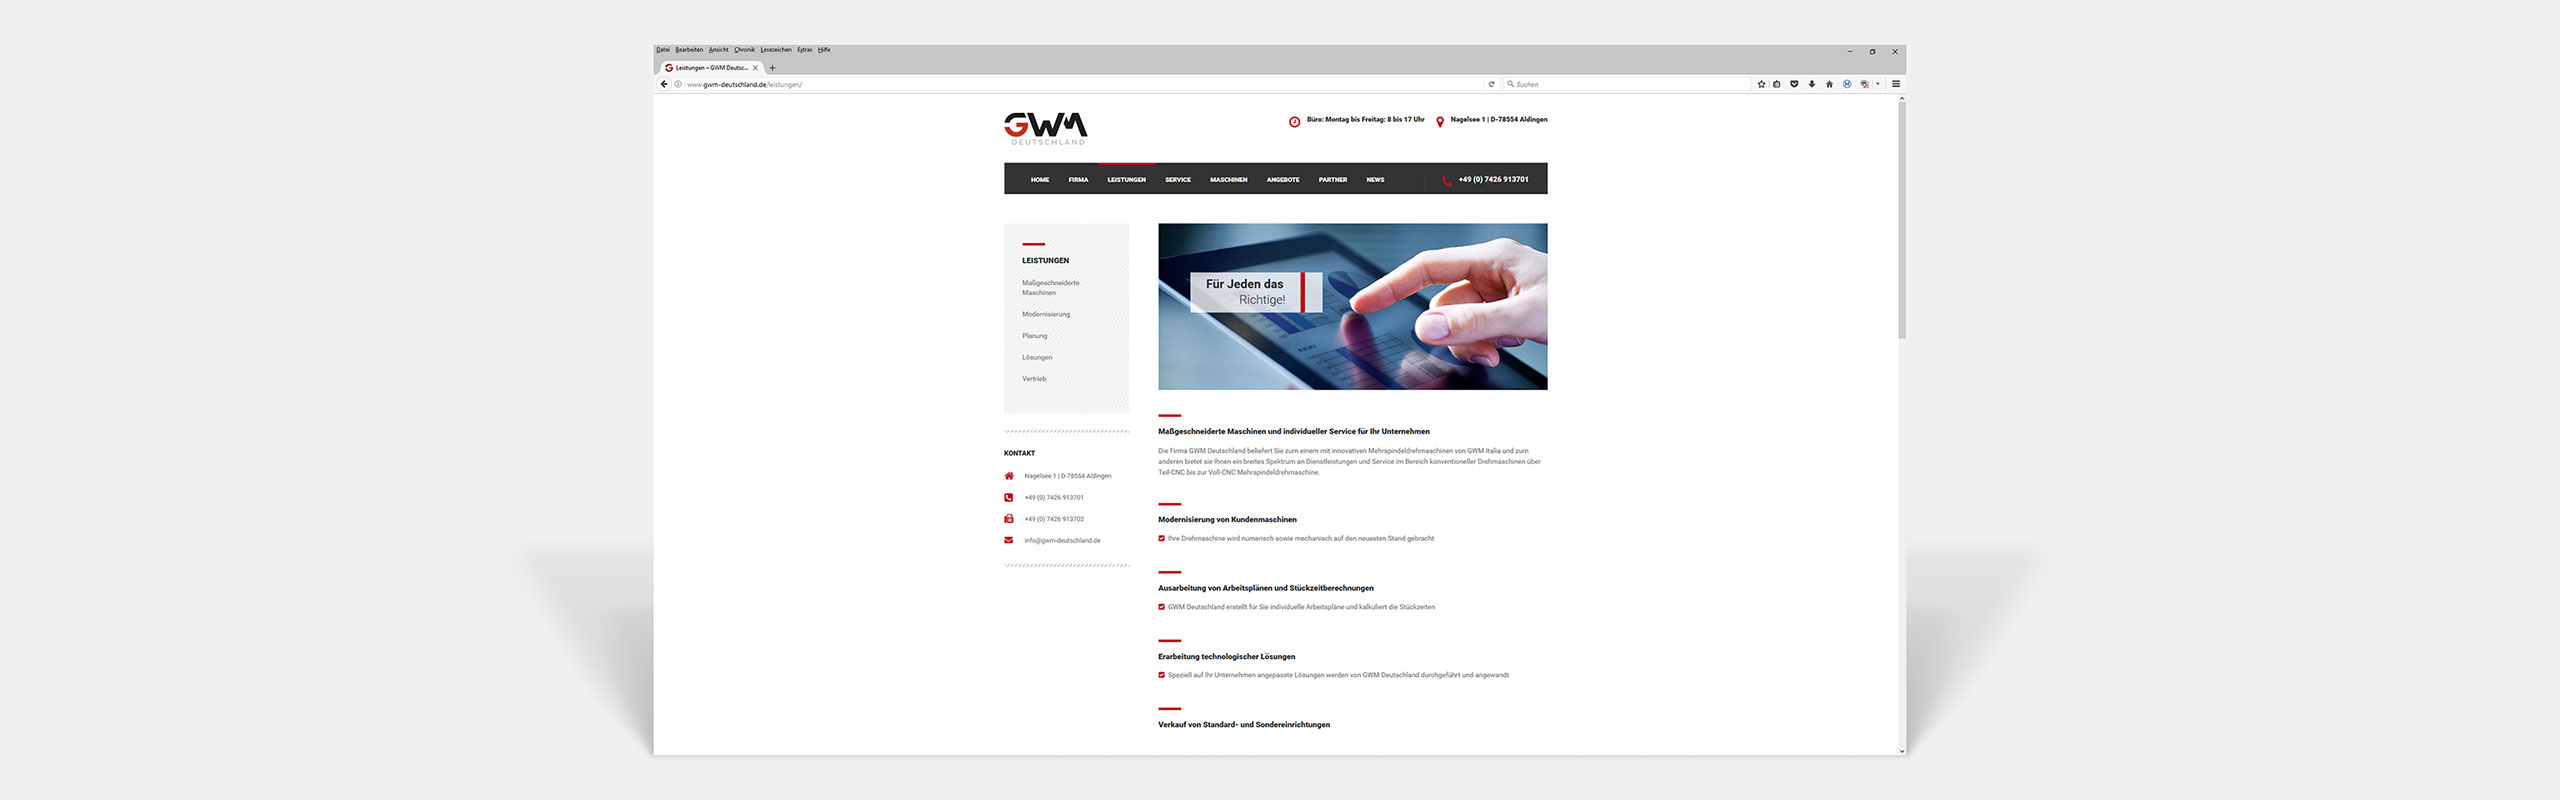 GWM Deutschland GmbH Responsive Website Leistungen by Hirschburg Werbeagentur